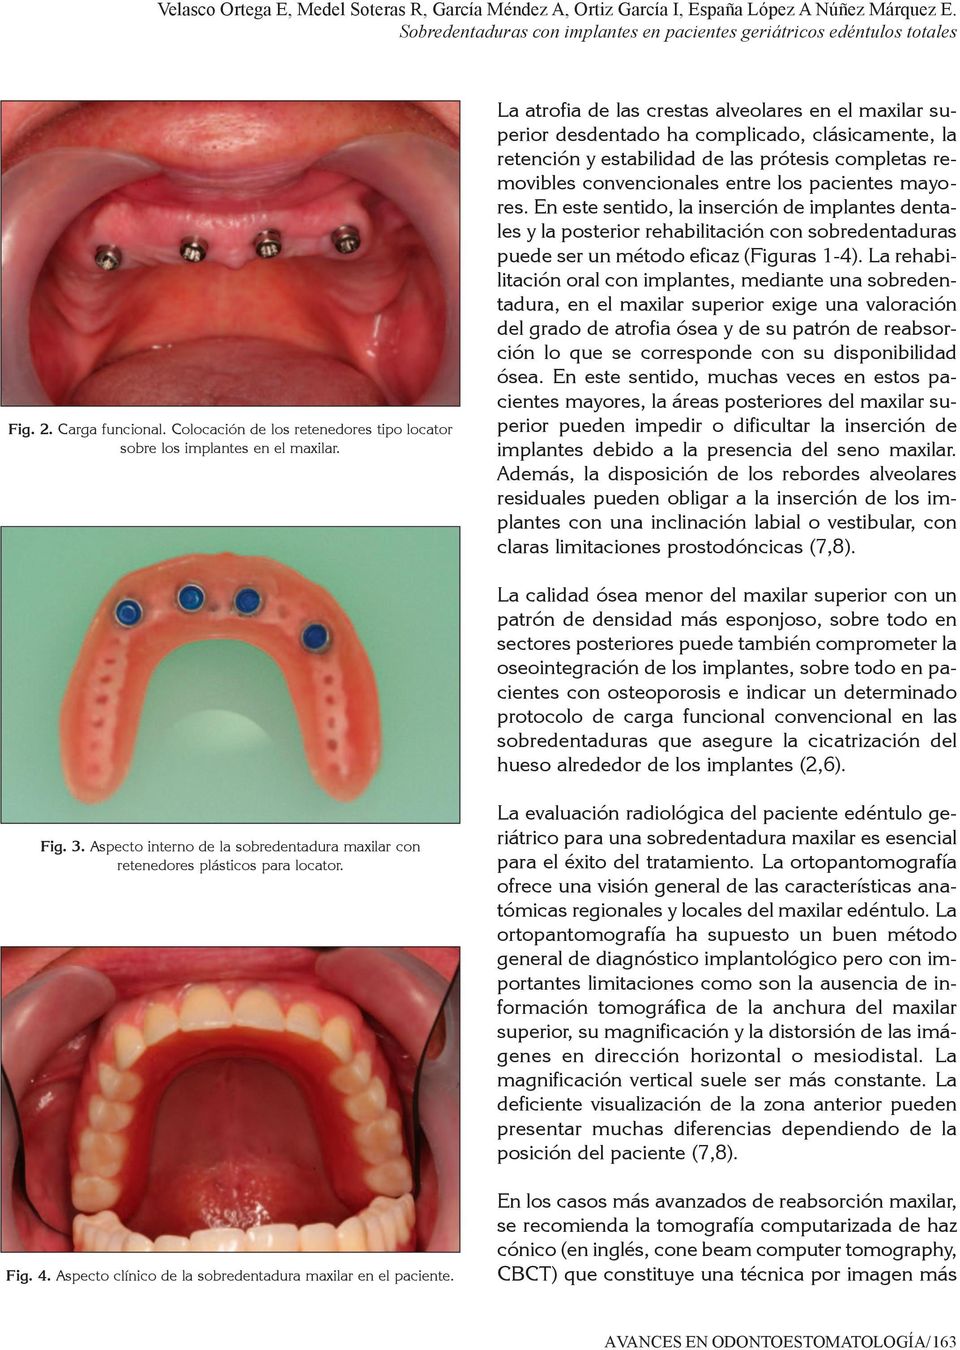 La atrofia de las crestas alveolares en el maxilar superior desdentado ha complicado, clásicamente, la retención y estabilidad de las prótesis completas removibles convencionales entre los pacientes